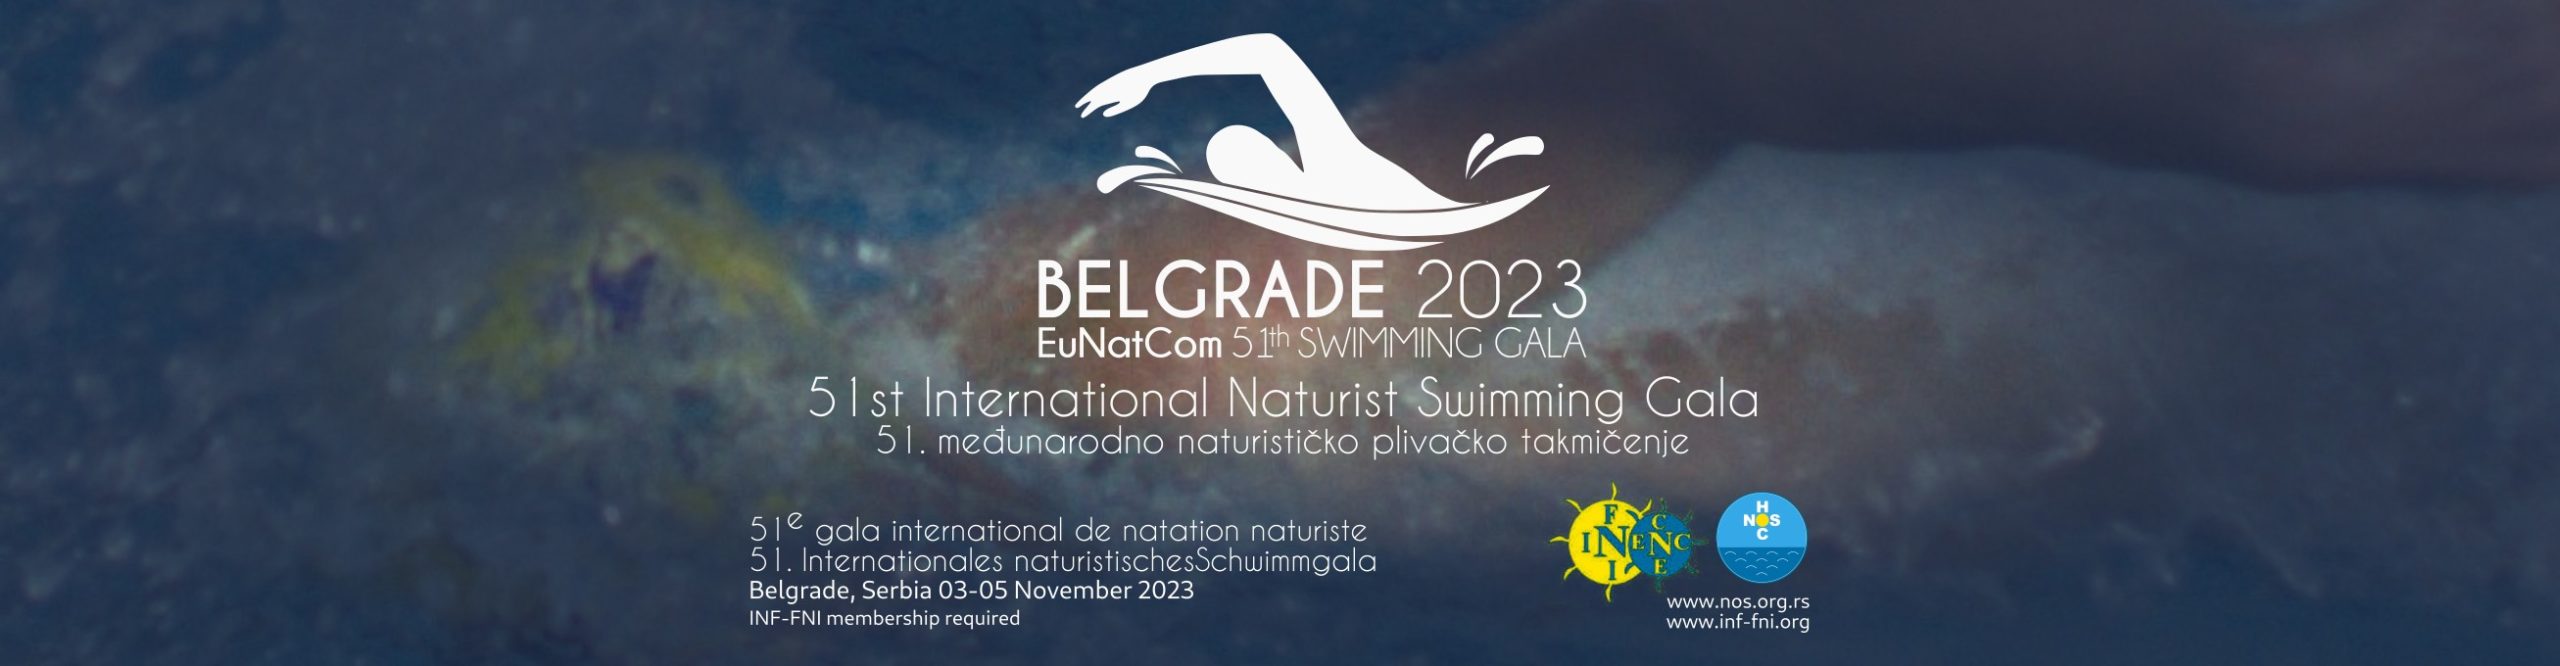 Gala de Natación Naurista/nudista 2023 Belgrado.